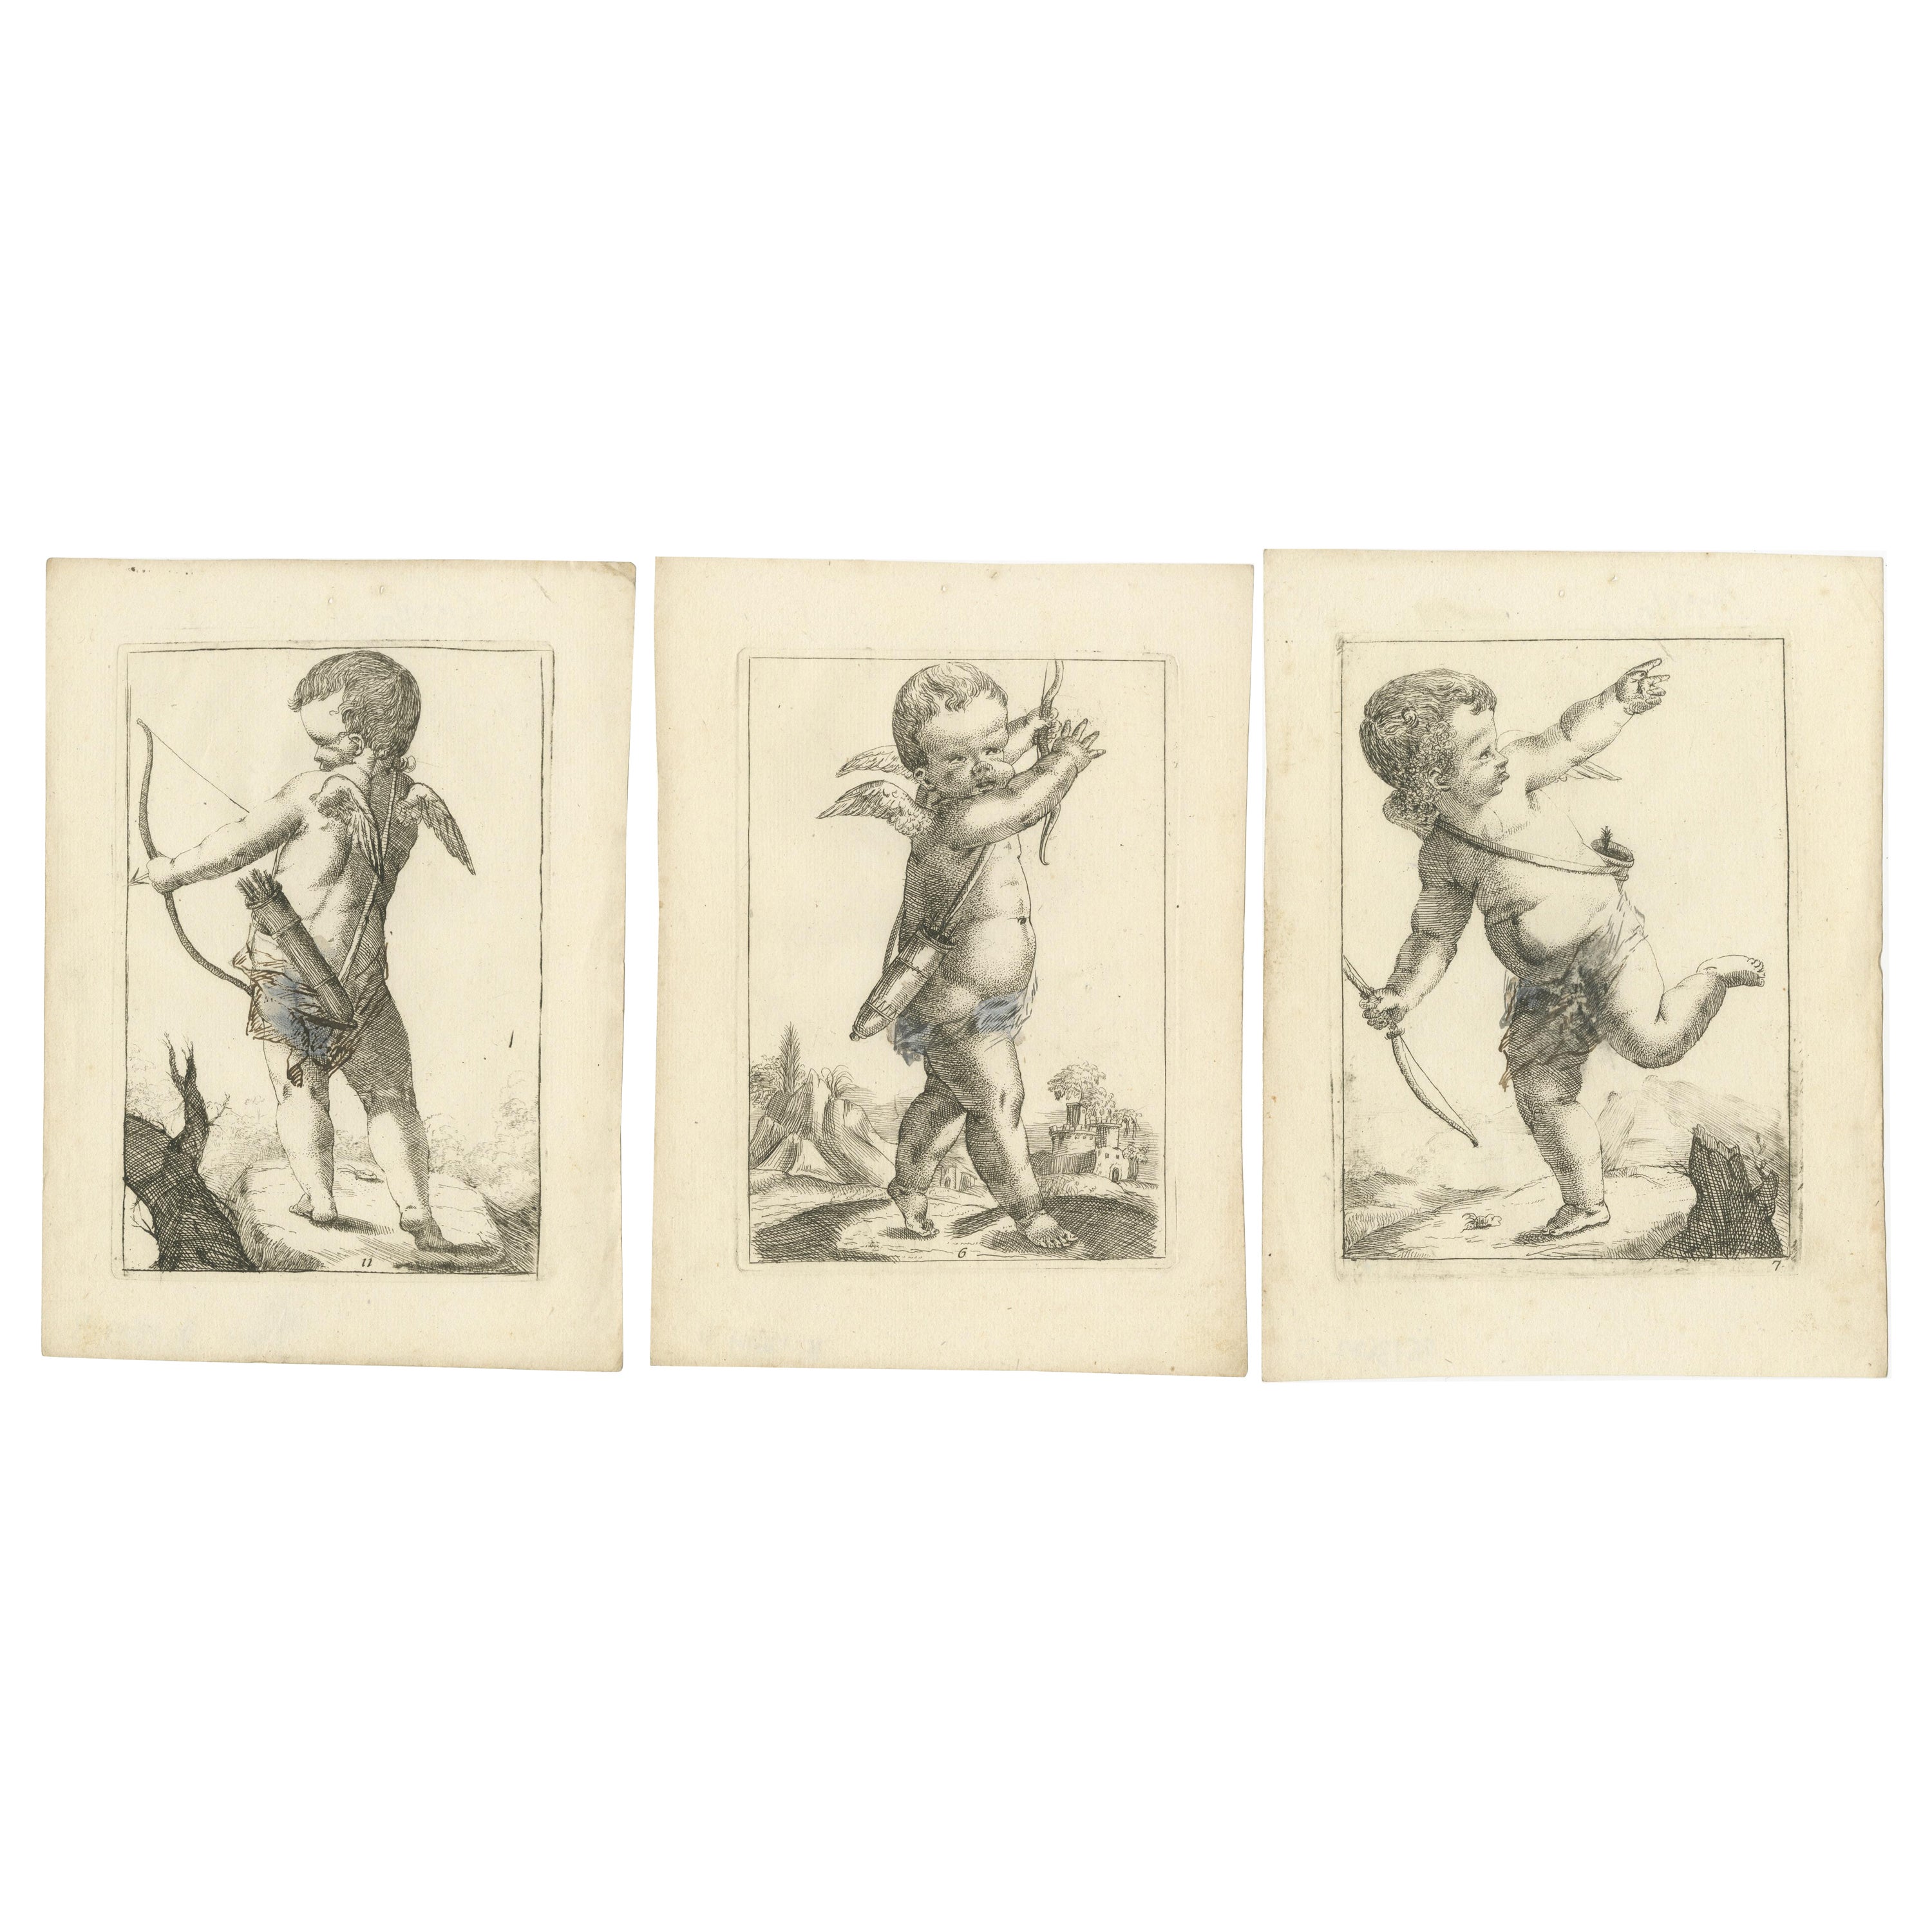 Harmonischer Unfug: Ein Triptychon mit barocken Putten, um 1620